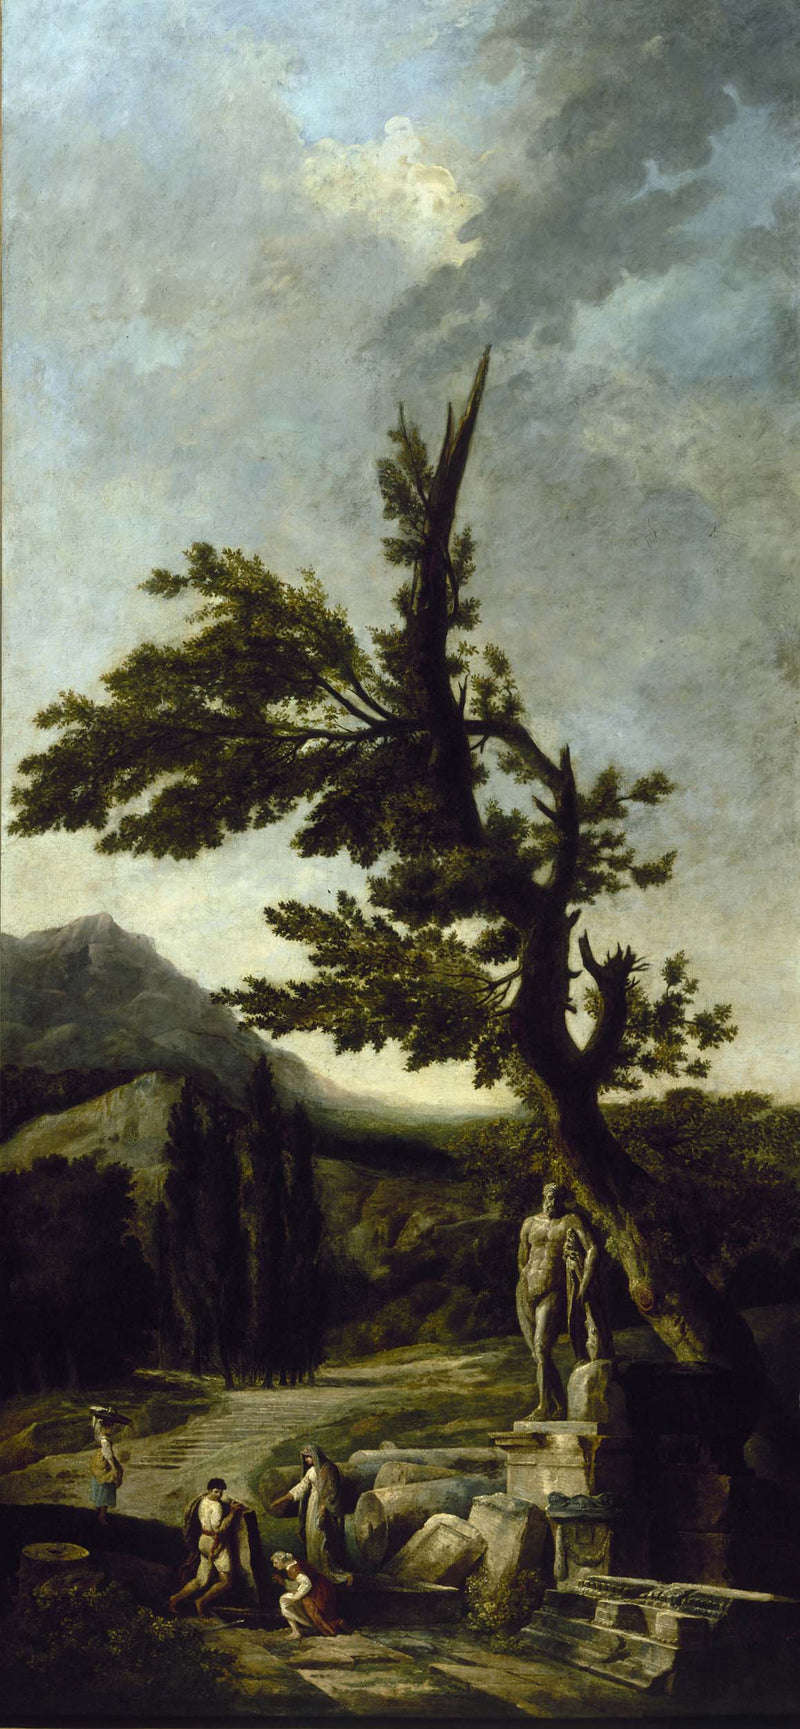 hubert-robert-1790-farnese-hercules-art-print-fine-art-reproduction-wall-art